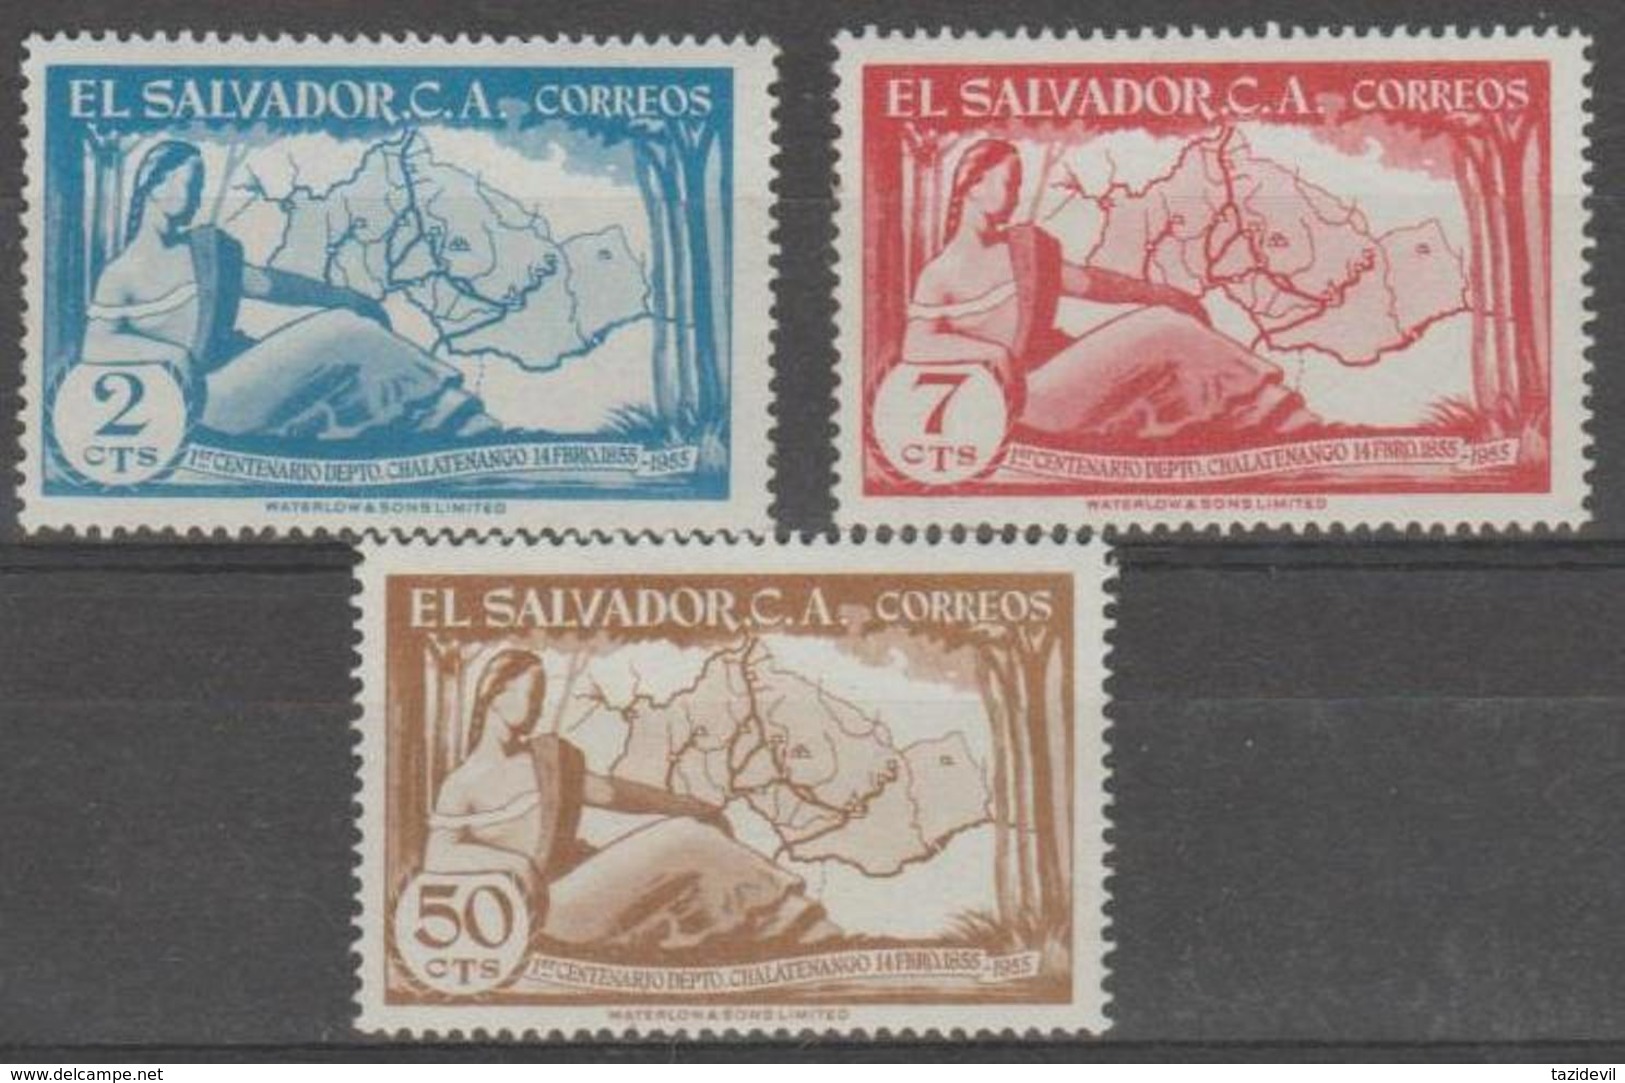 EL SALVADOR - 1956 Maps. Scott 682-684. Mint - Salvador